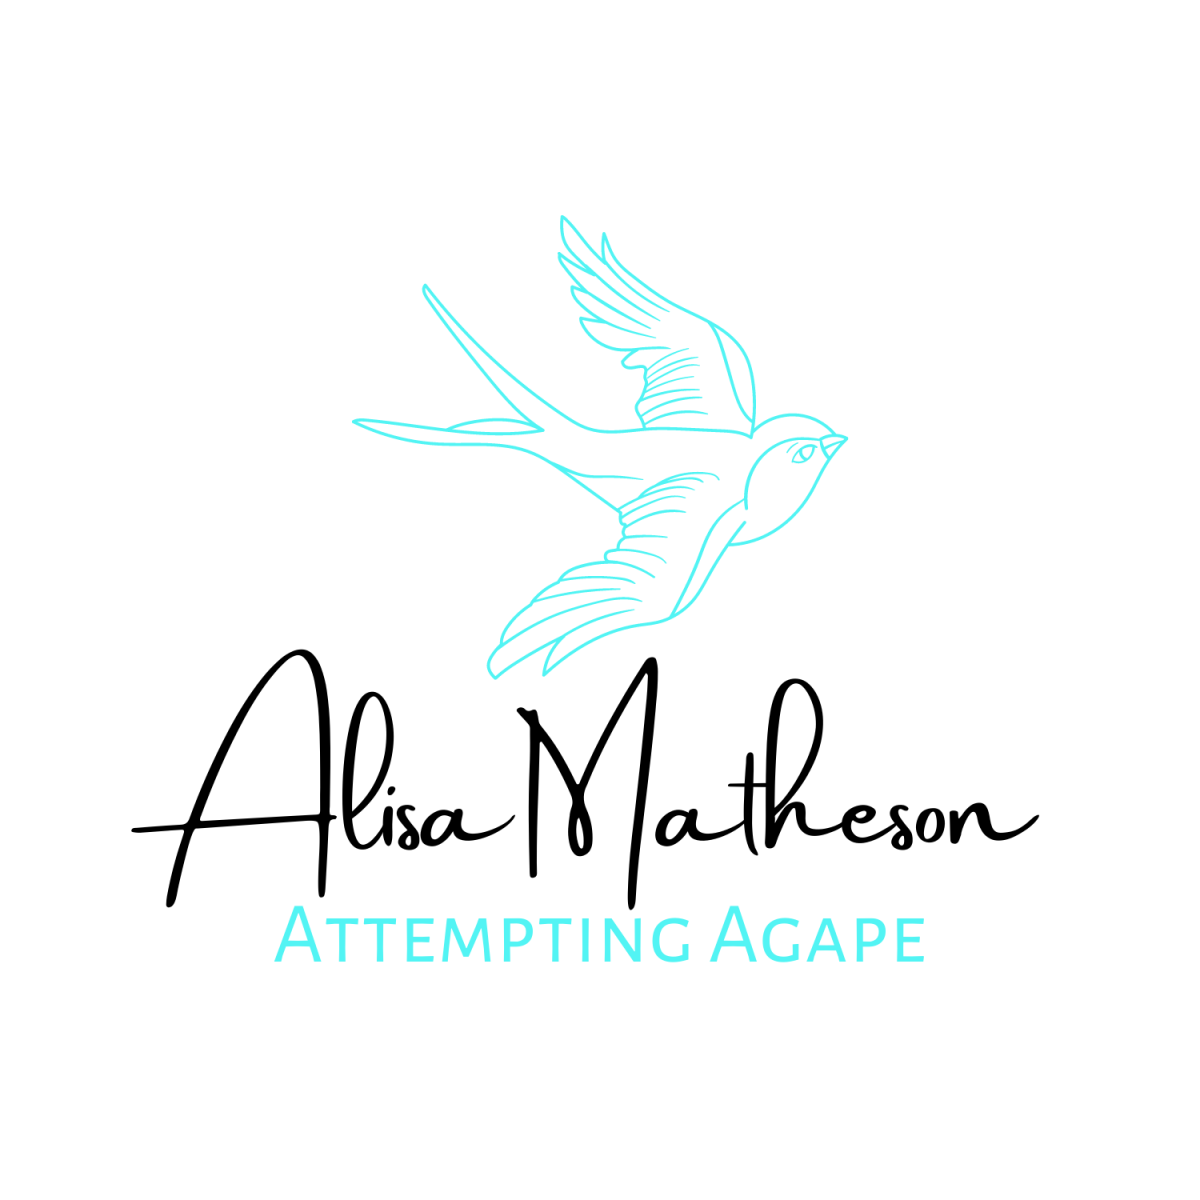 Alisa Matheson - Attempting Agape LOGO